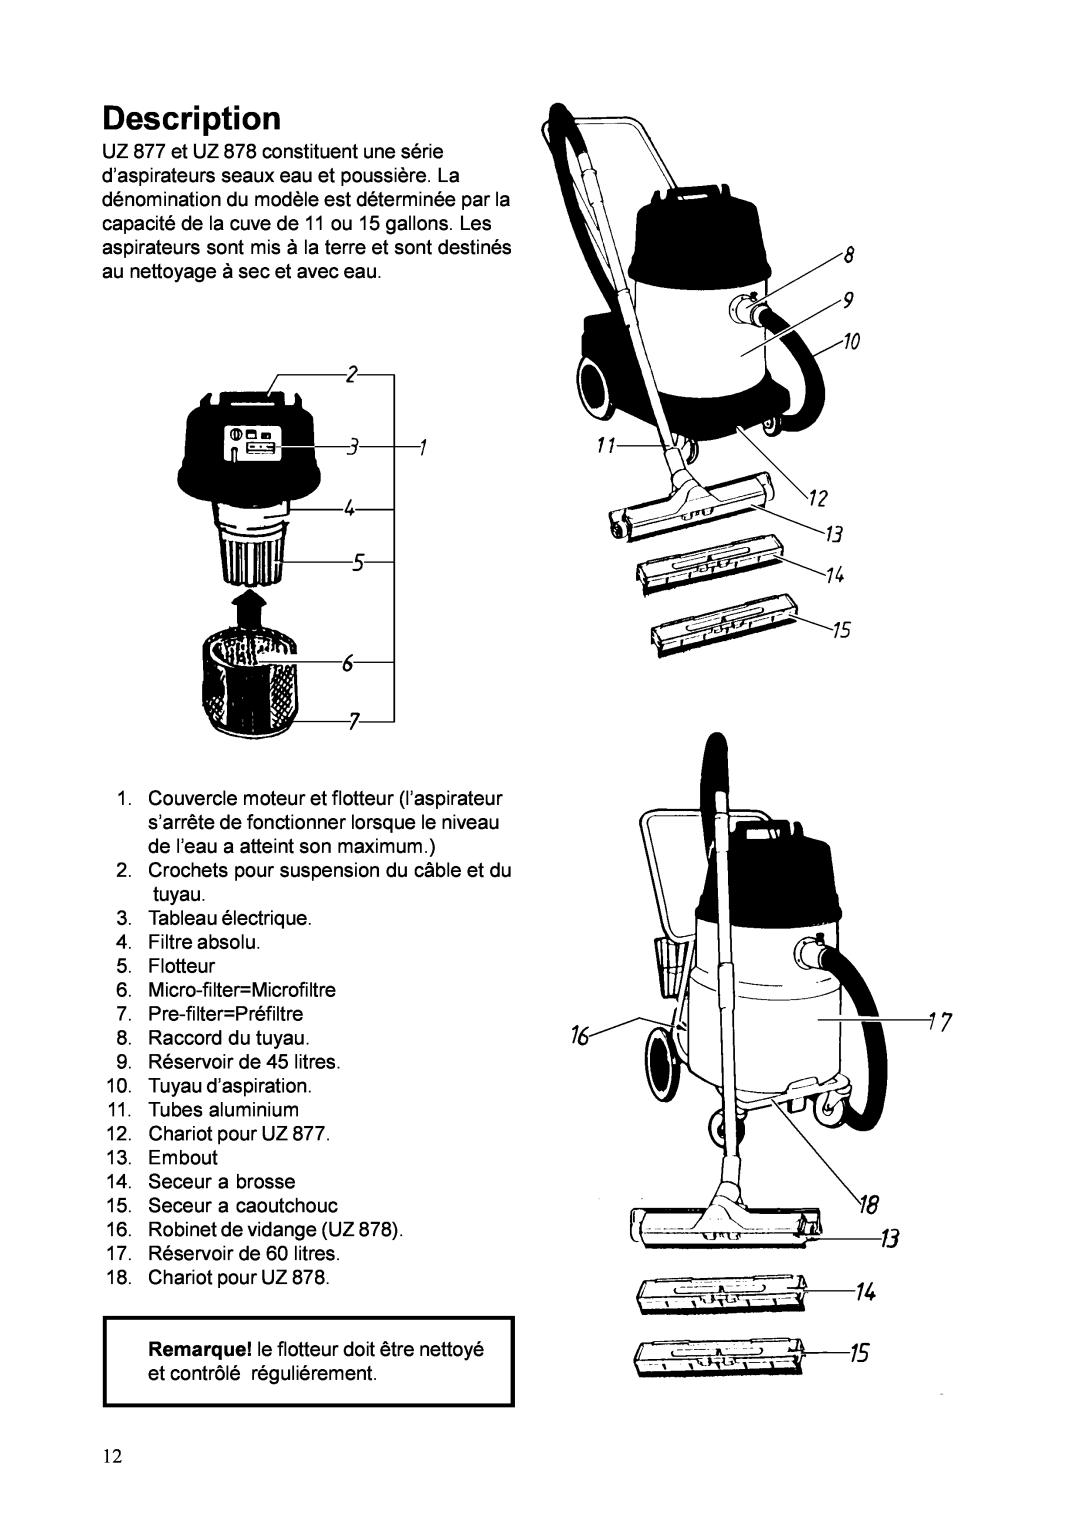 Nilfisk-ALTO 878B, UZ 878 manual Description, Crochets pour suspension du câble et du tuyau 